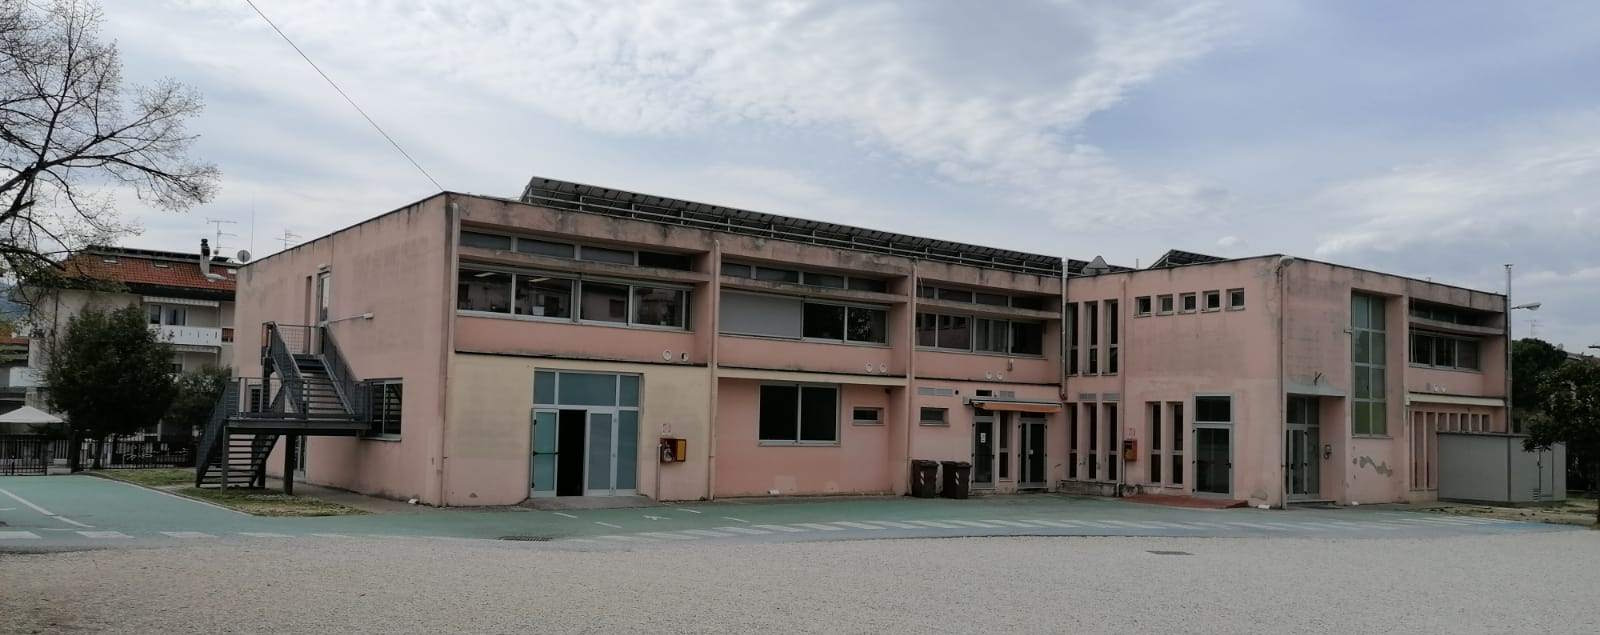 Scuola, ottenuti 5 milioni di euro dal Pnrr per un nuovo plesso in via Benedetto Croce